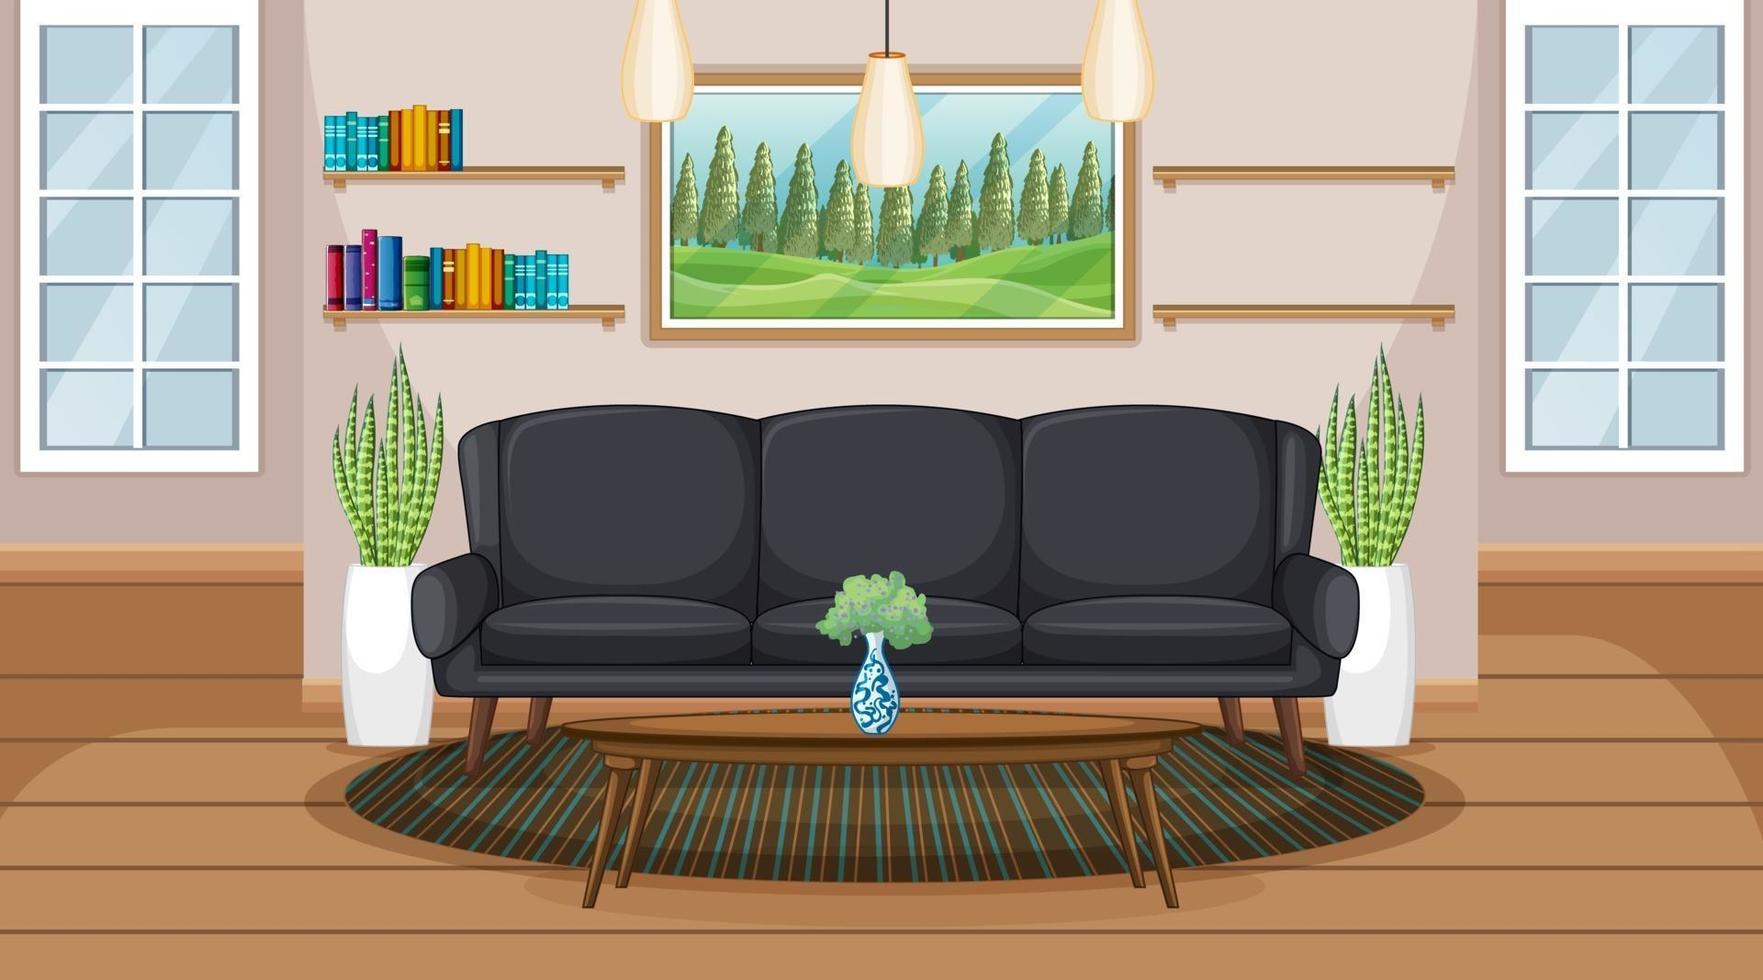 cena interior de sala de estar com móveis e decoração de sala de estar vetor